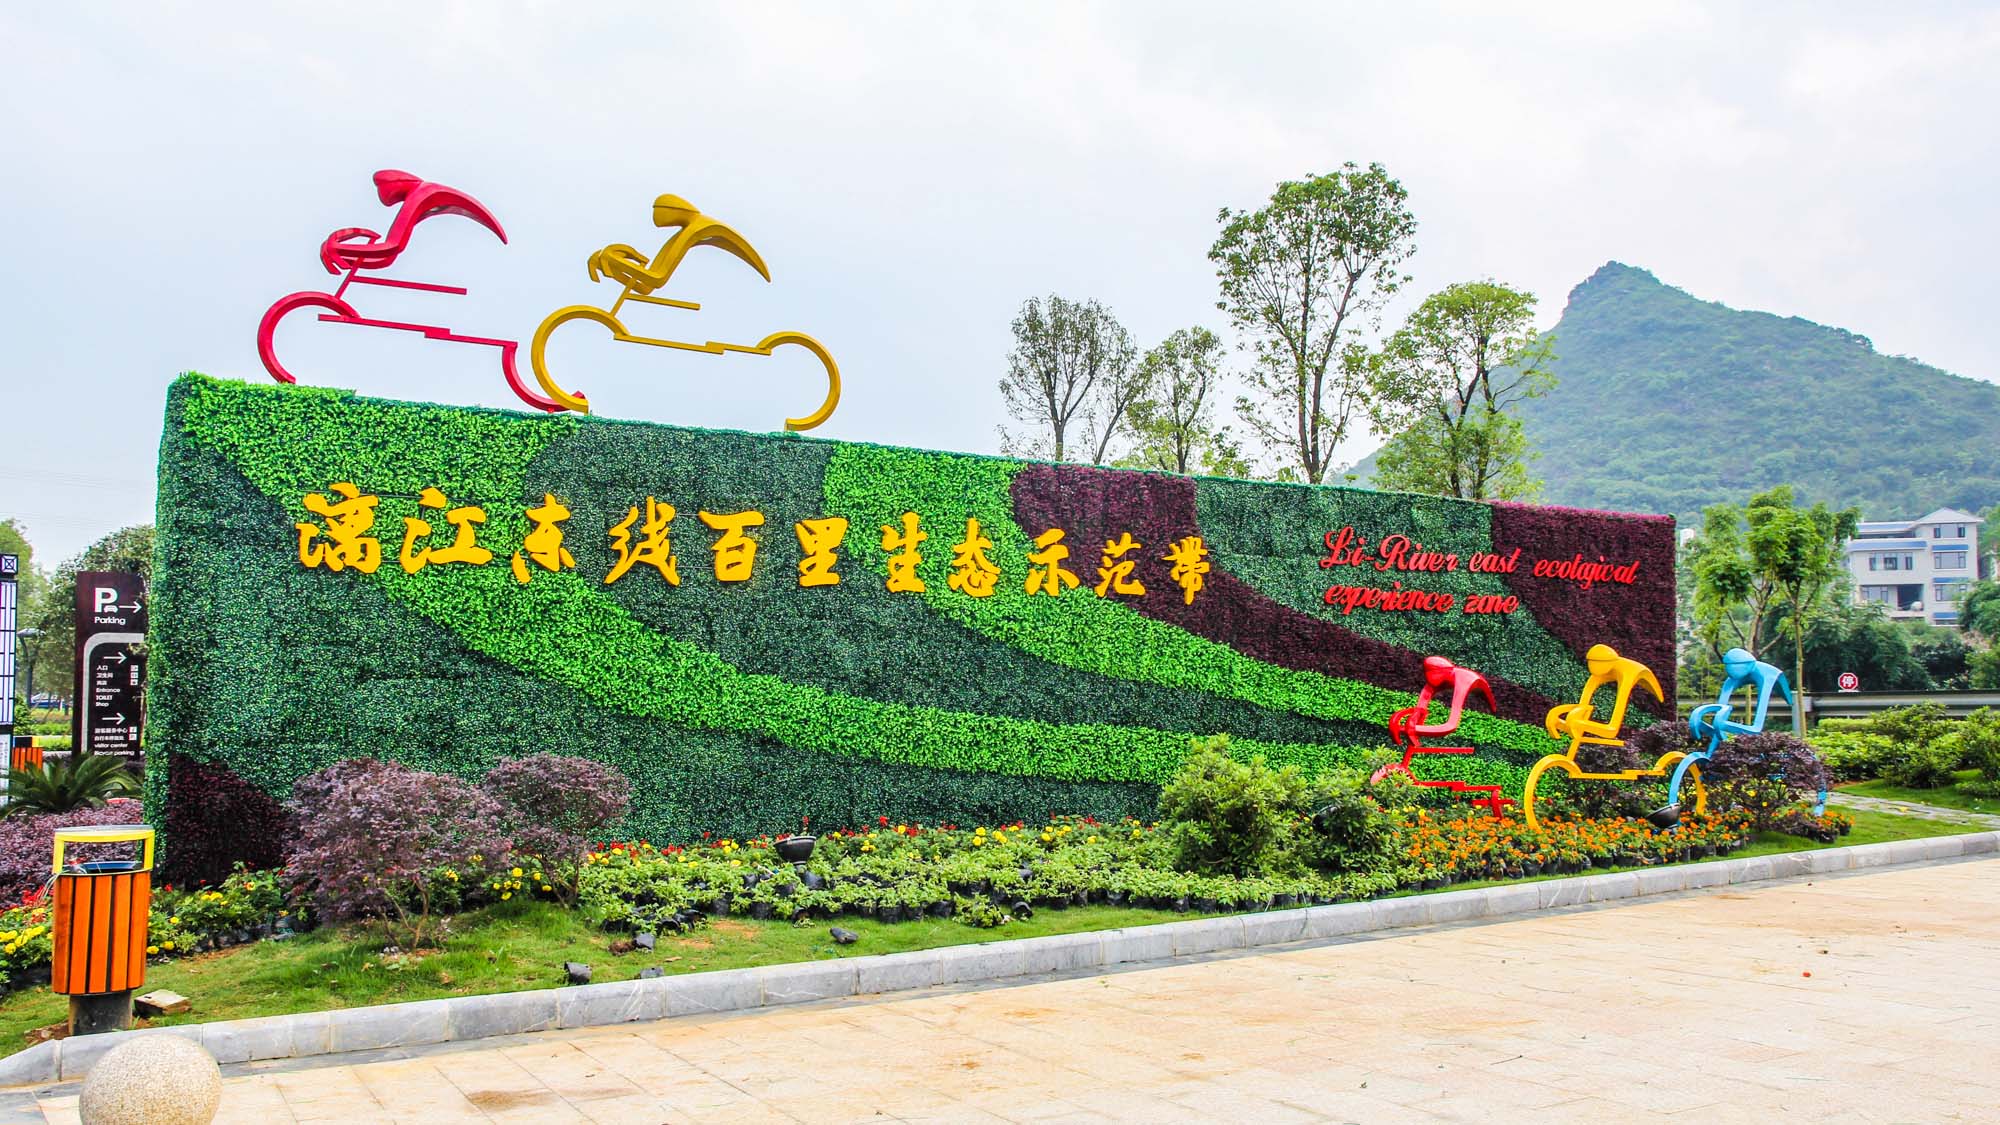 上海漓江生態示范帶——段綠道導視系統工程